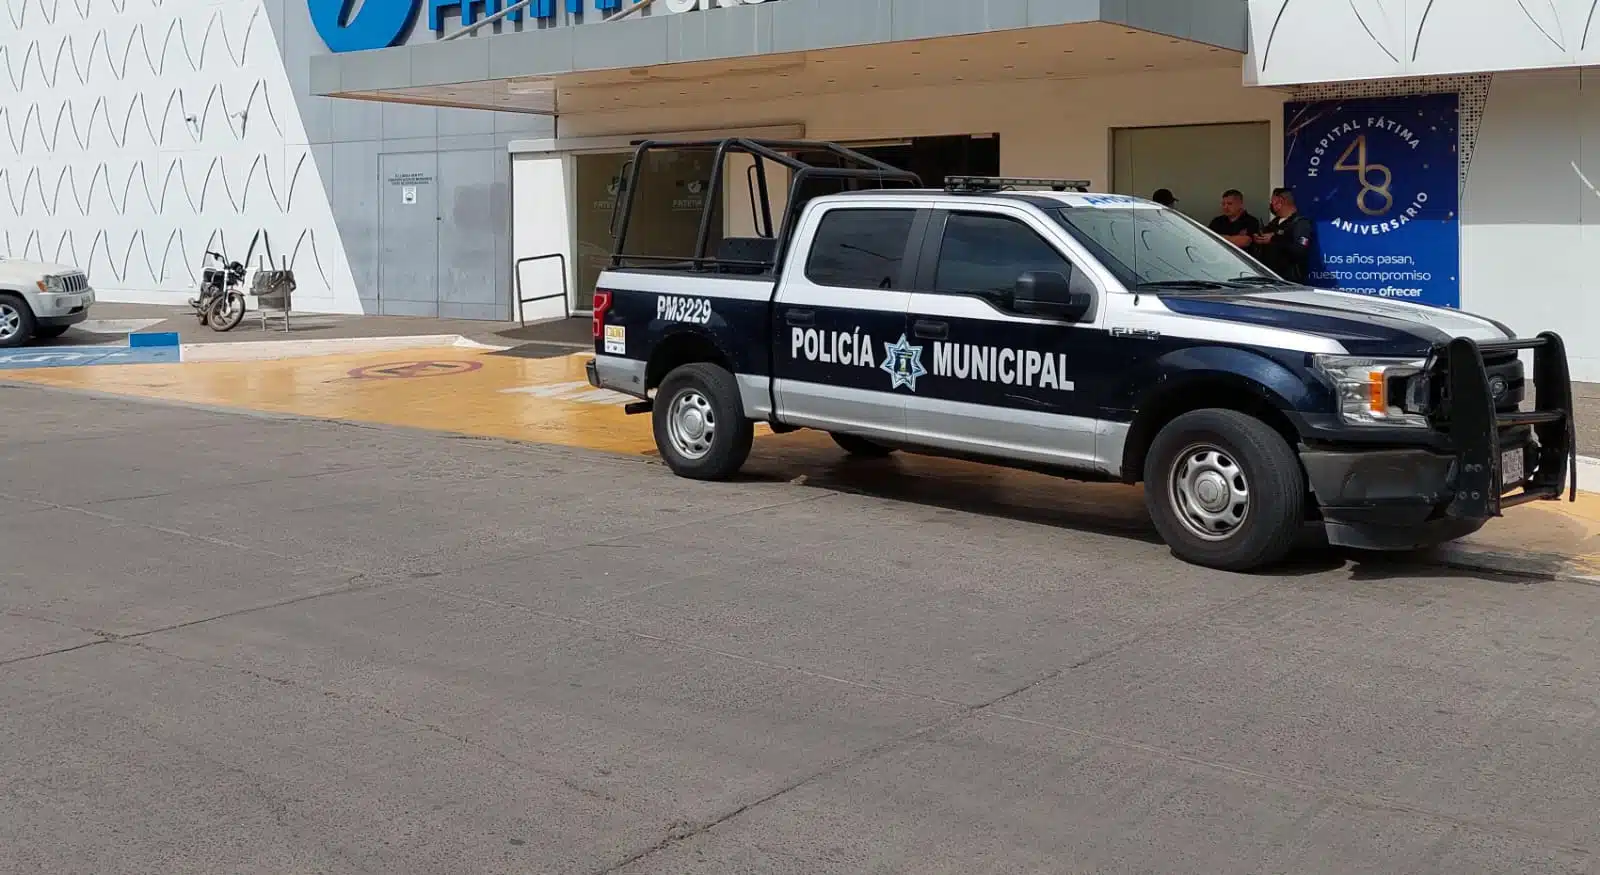 Policía Municipal en hospital privado